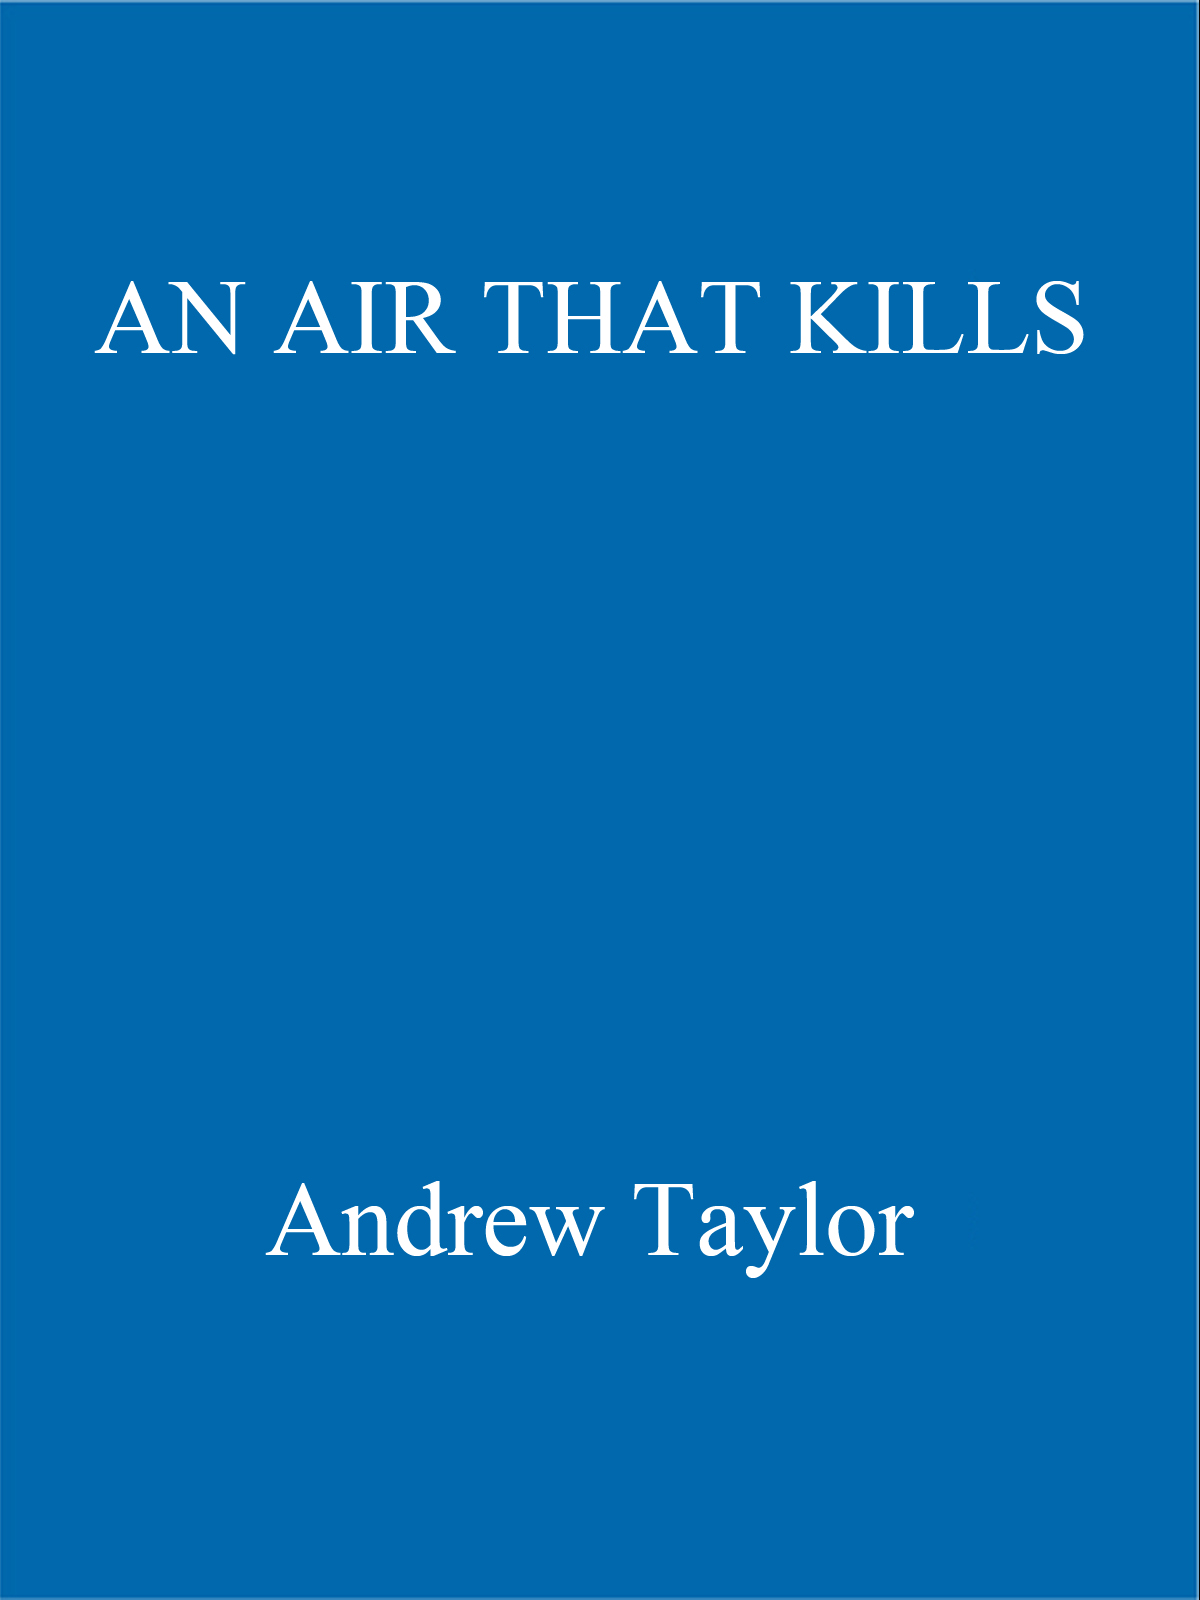 An Air That Kills (2002)